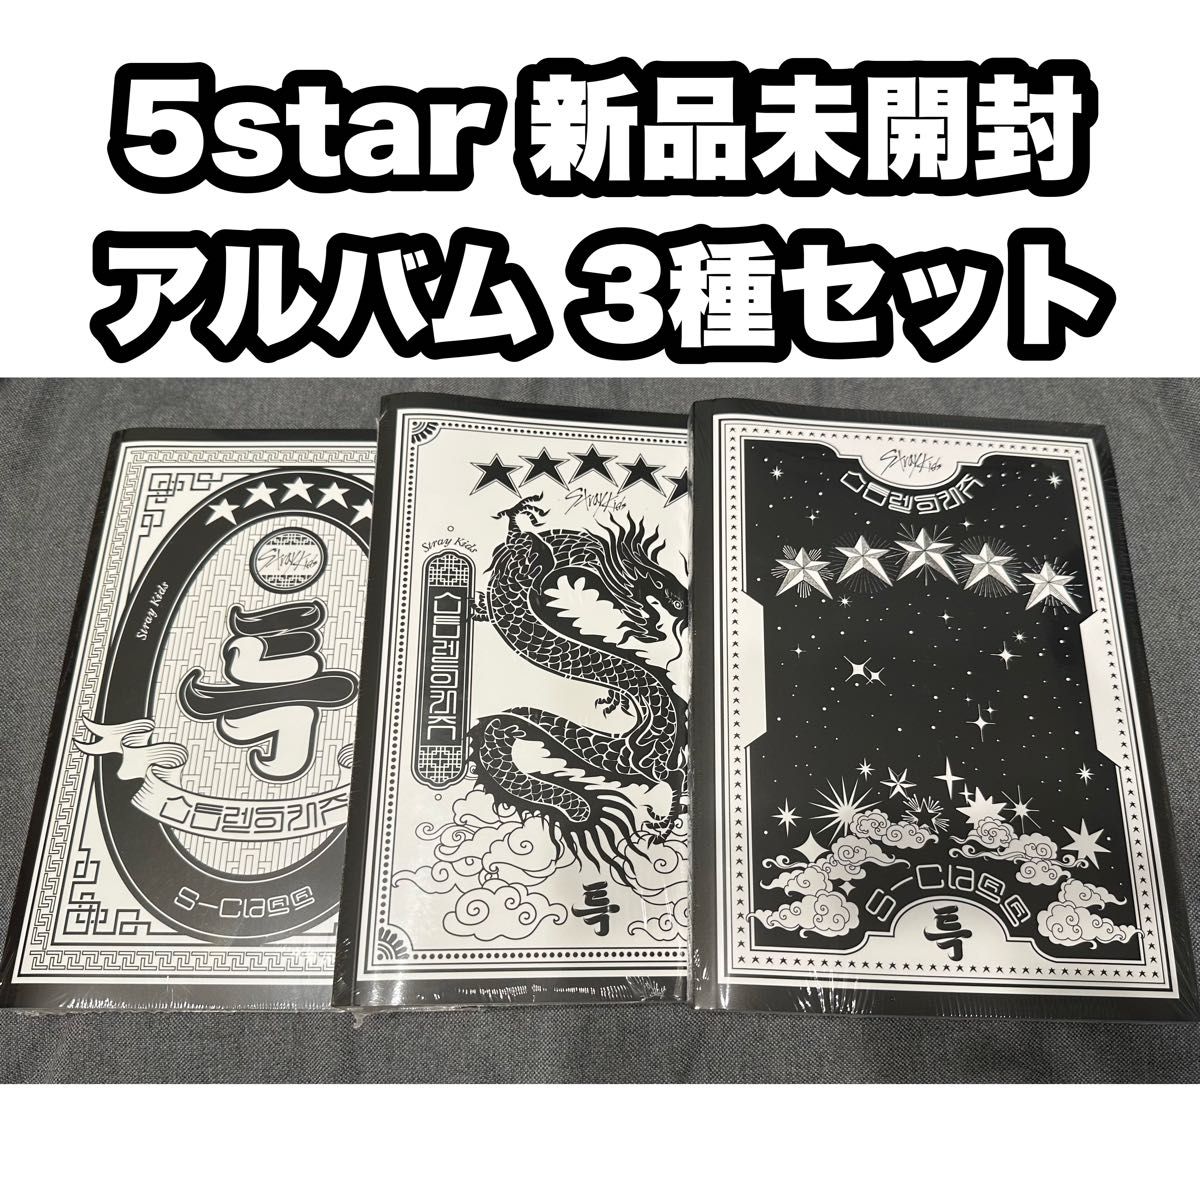 Stray Kids スキズ 新品未開封 アルバム 5star 通常版 プレオーダー 特典